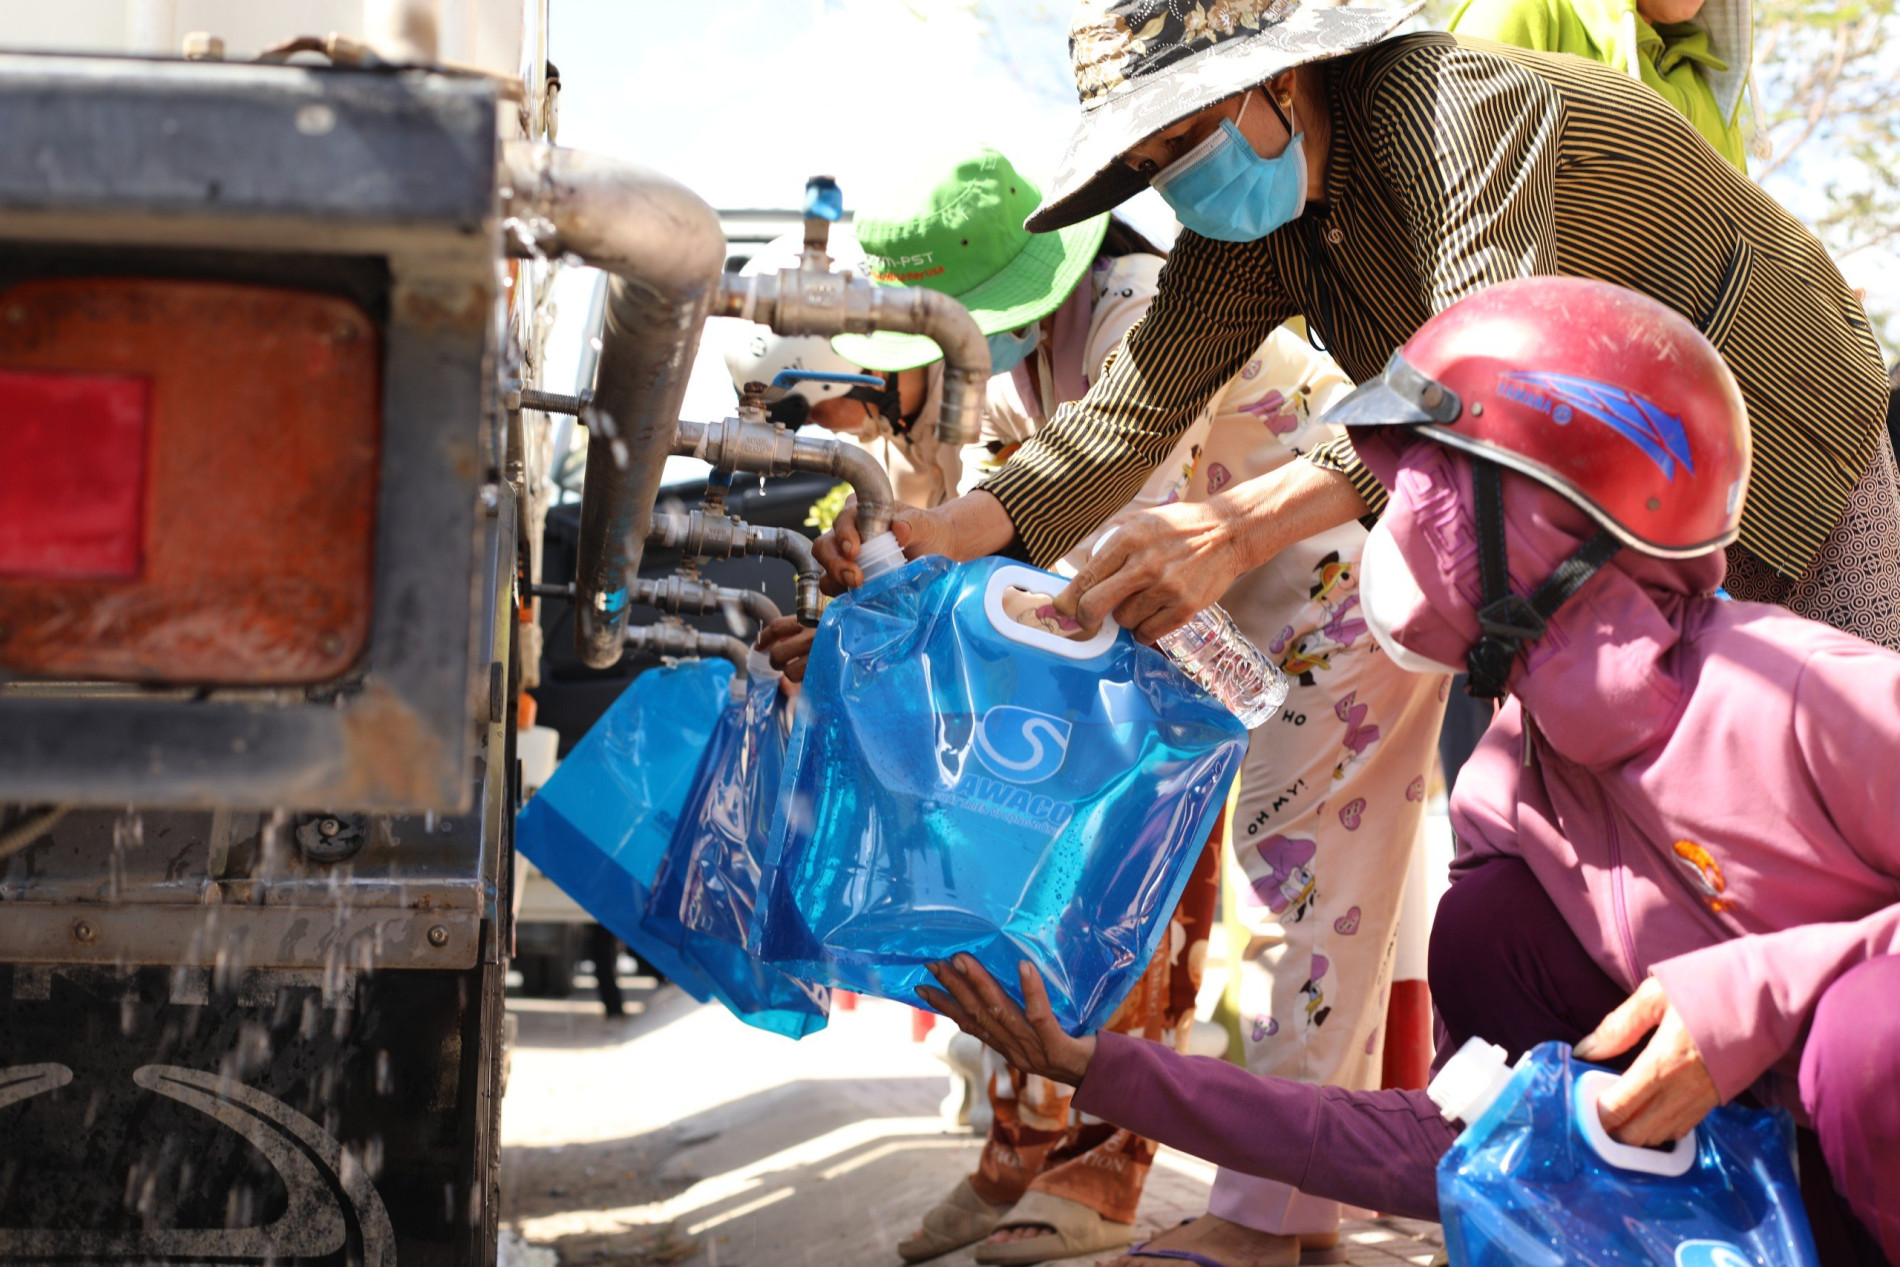 Sawaco hỗ trợ nước sạch cho bà con vùng hạn, mặn tại huyện Tân Phú Đông, tỉnh Tiền Giang.